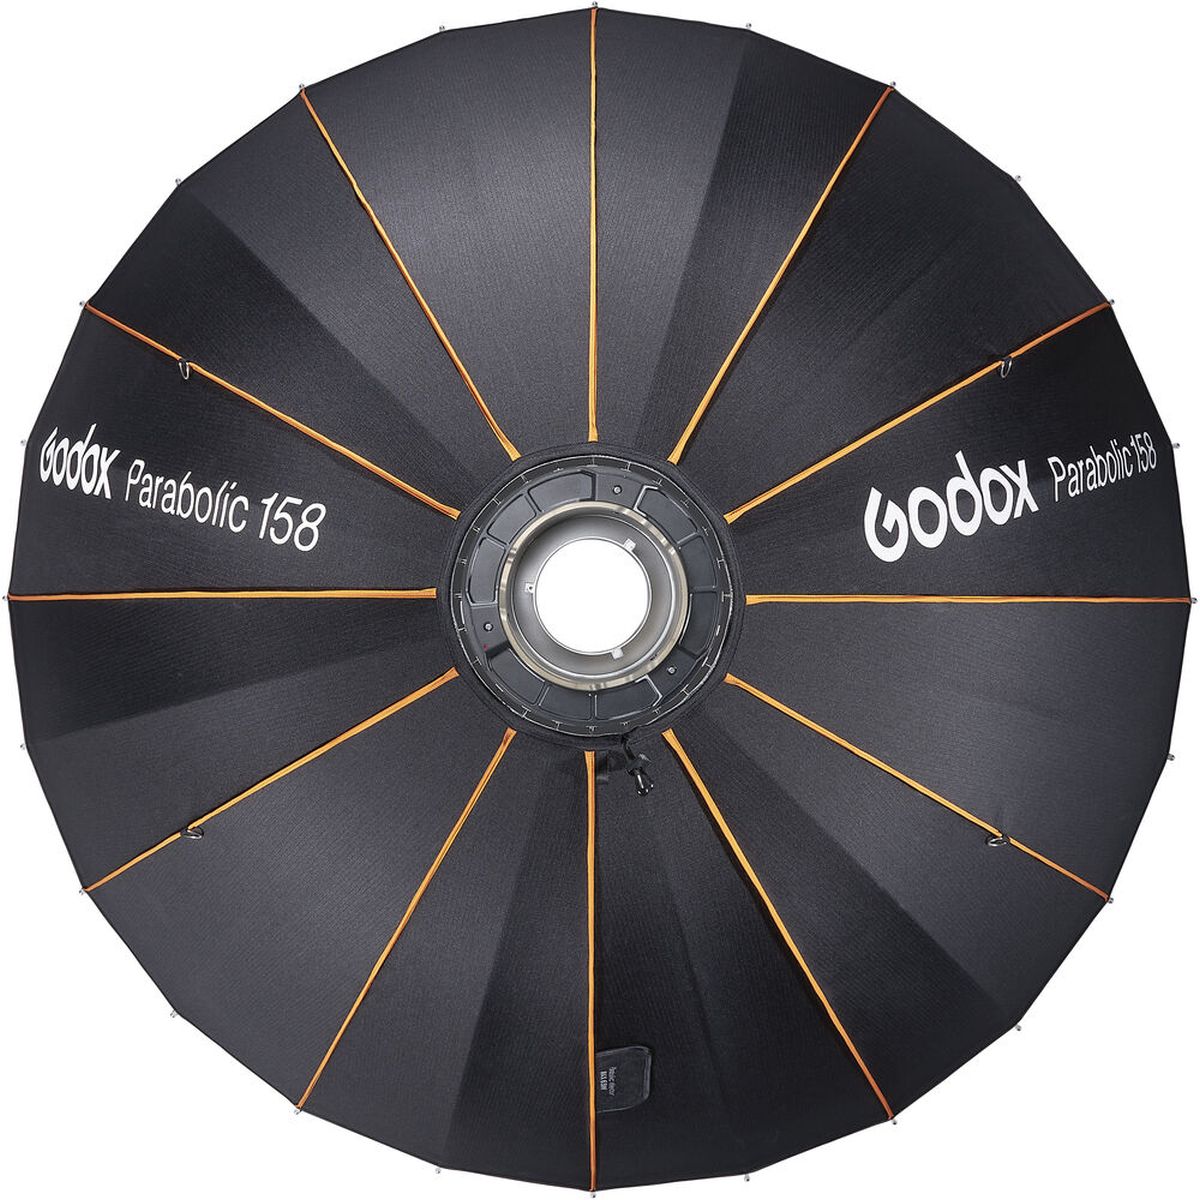 Godox Parabolreflektor 158